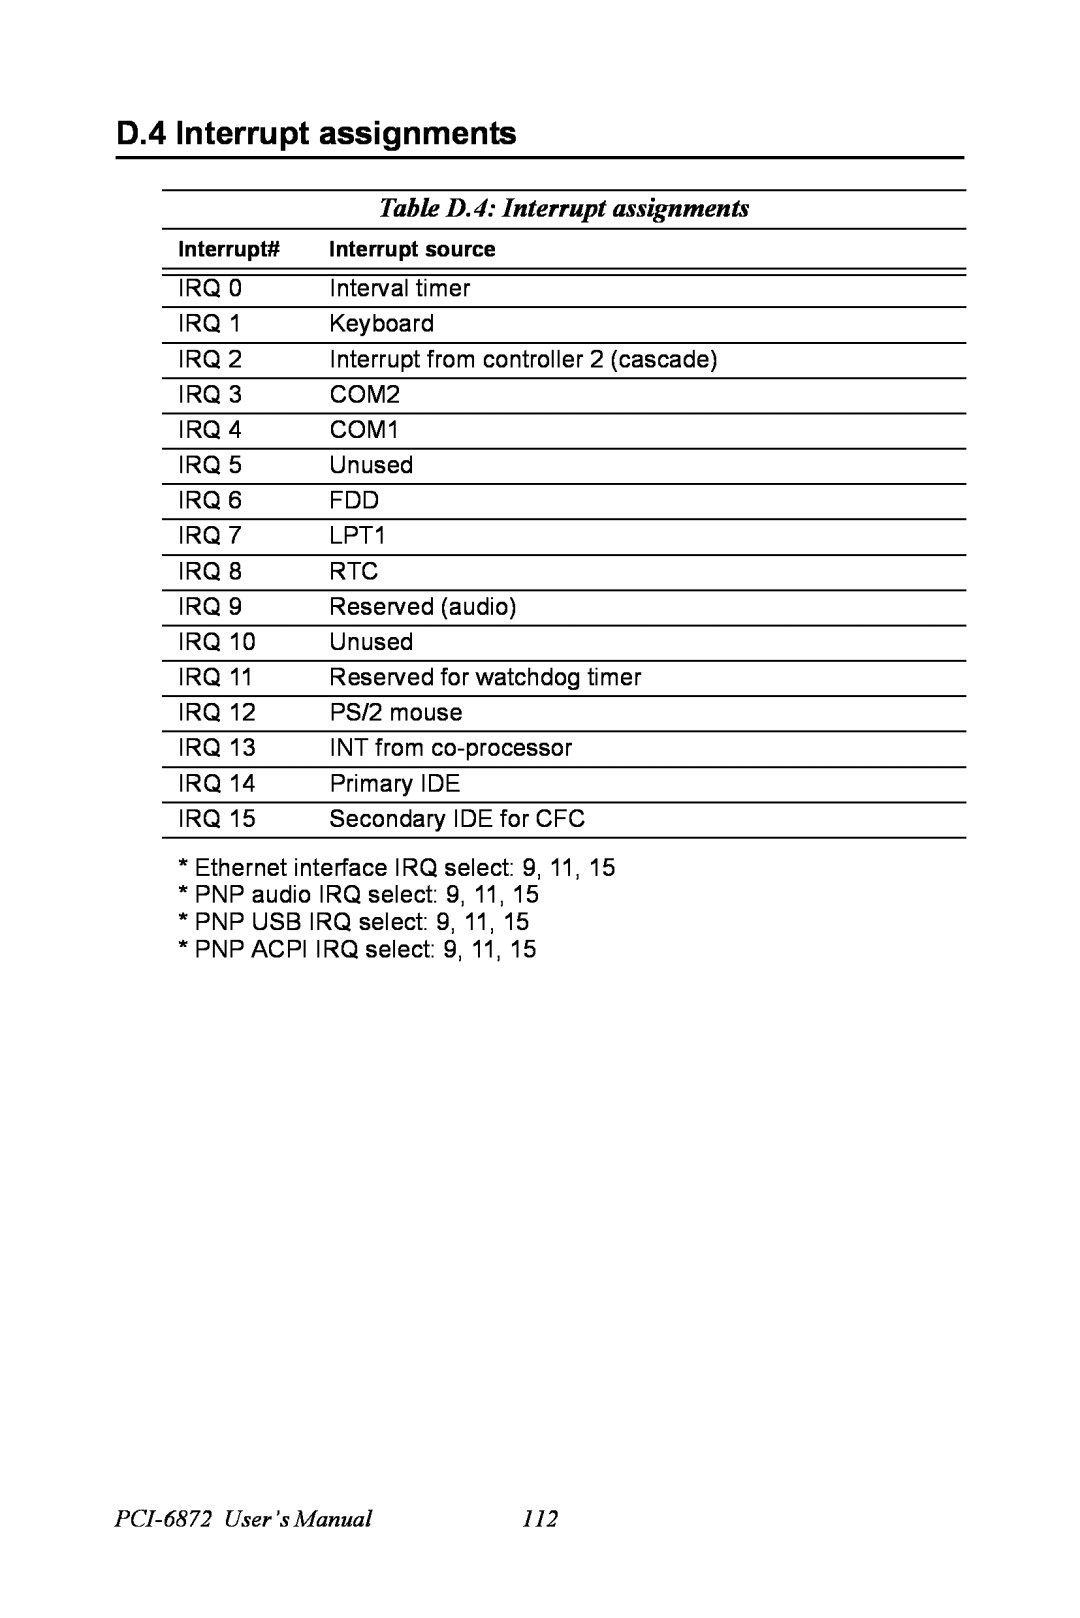 Advantech user manual Table D.4 Interrupt assignments, PCI-6872 User’s Manual 